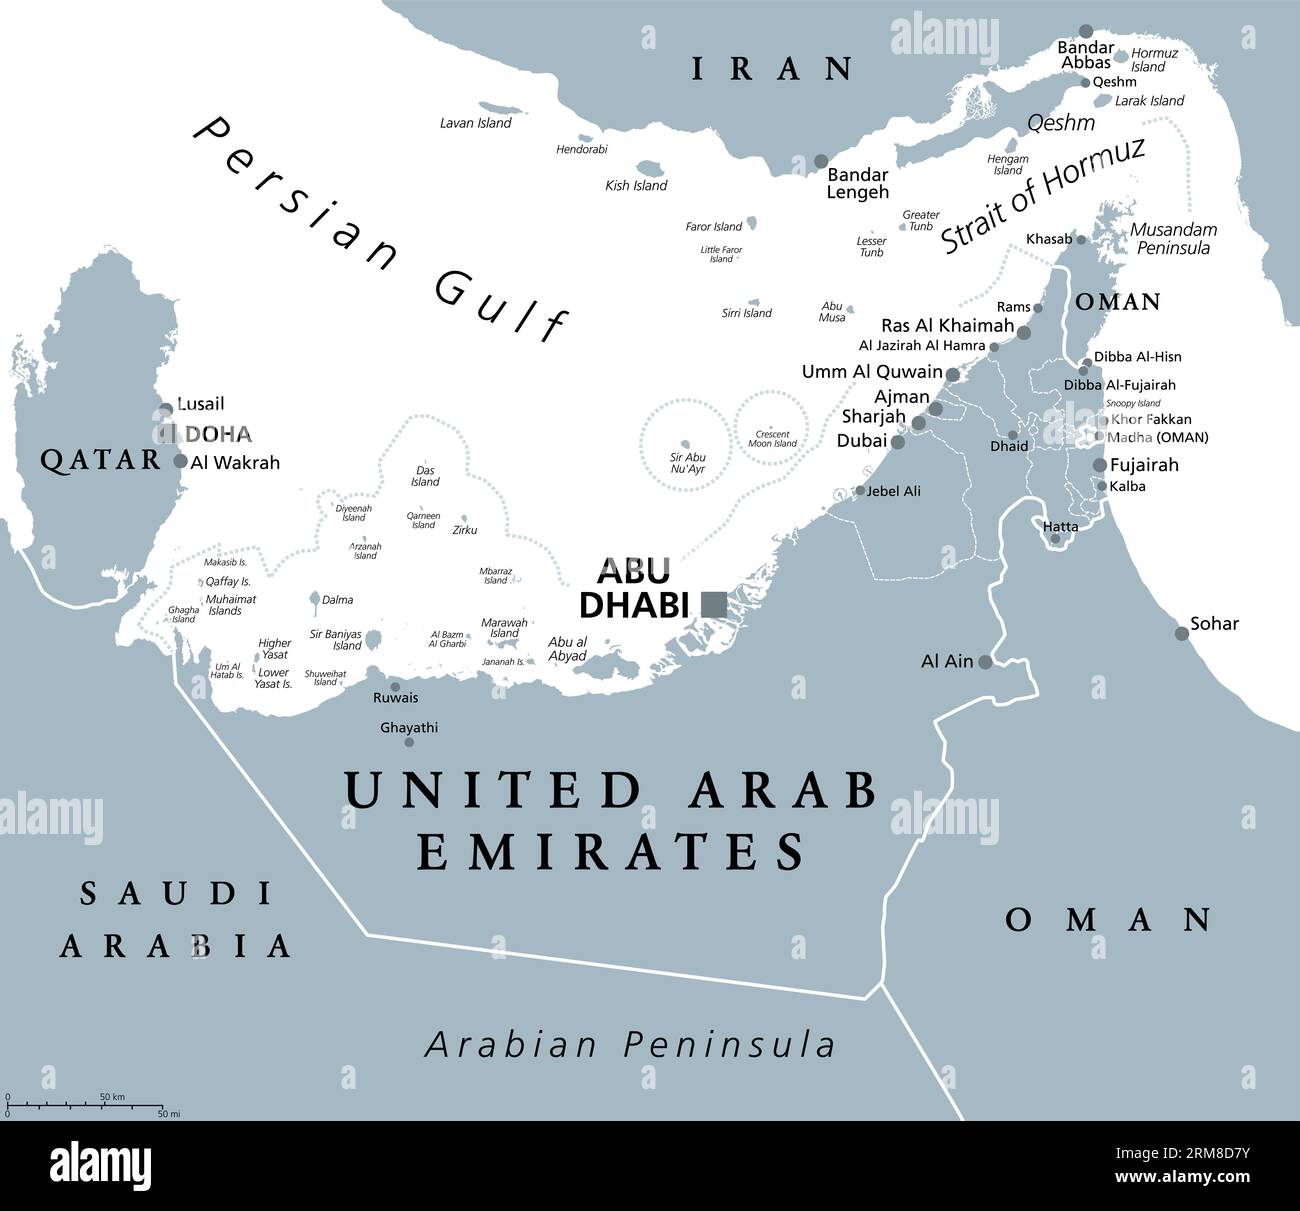 Vereinigte Arabische Emirate, VAE, graue politische Karte. Die Emirate, ein Land im Nahen Osten auf der Arabischen Halbinsel, zwischen Oman und Saudi-Arabien. Stockfoto